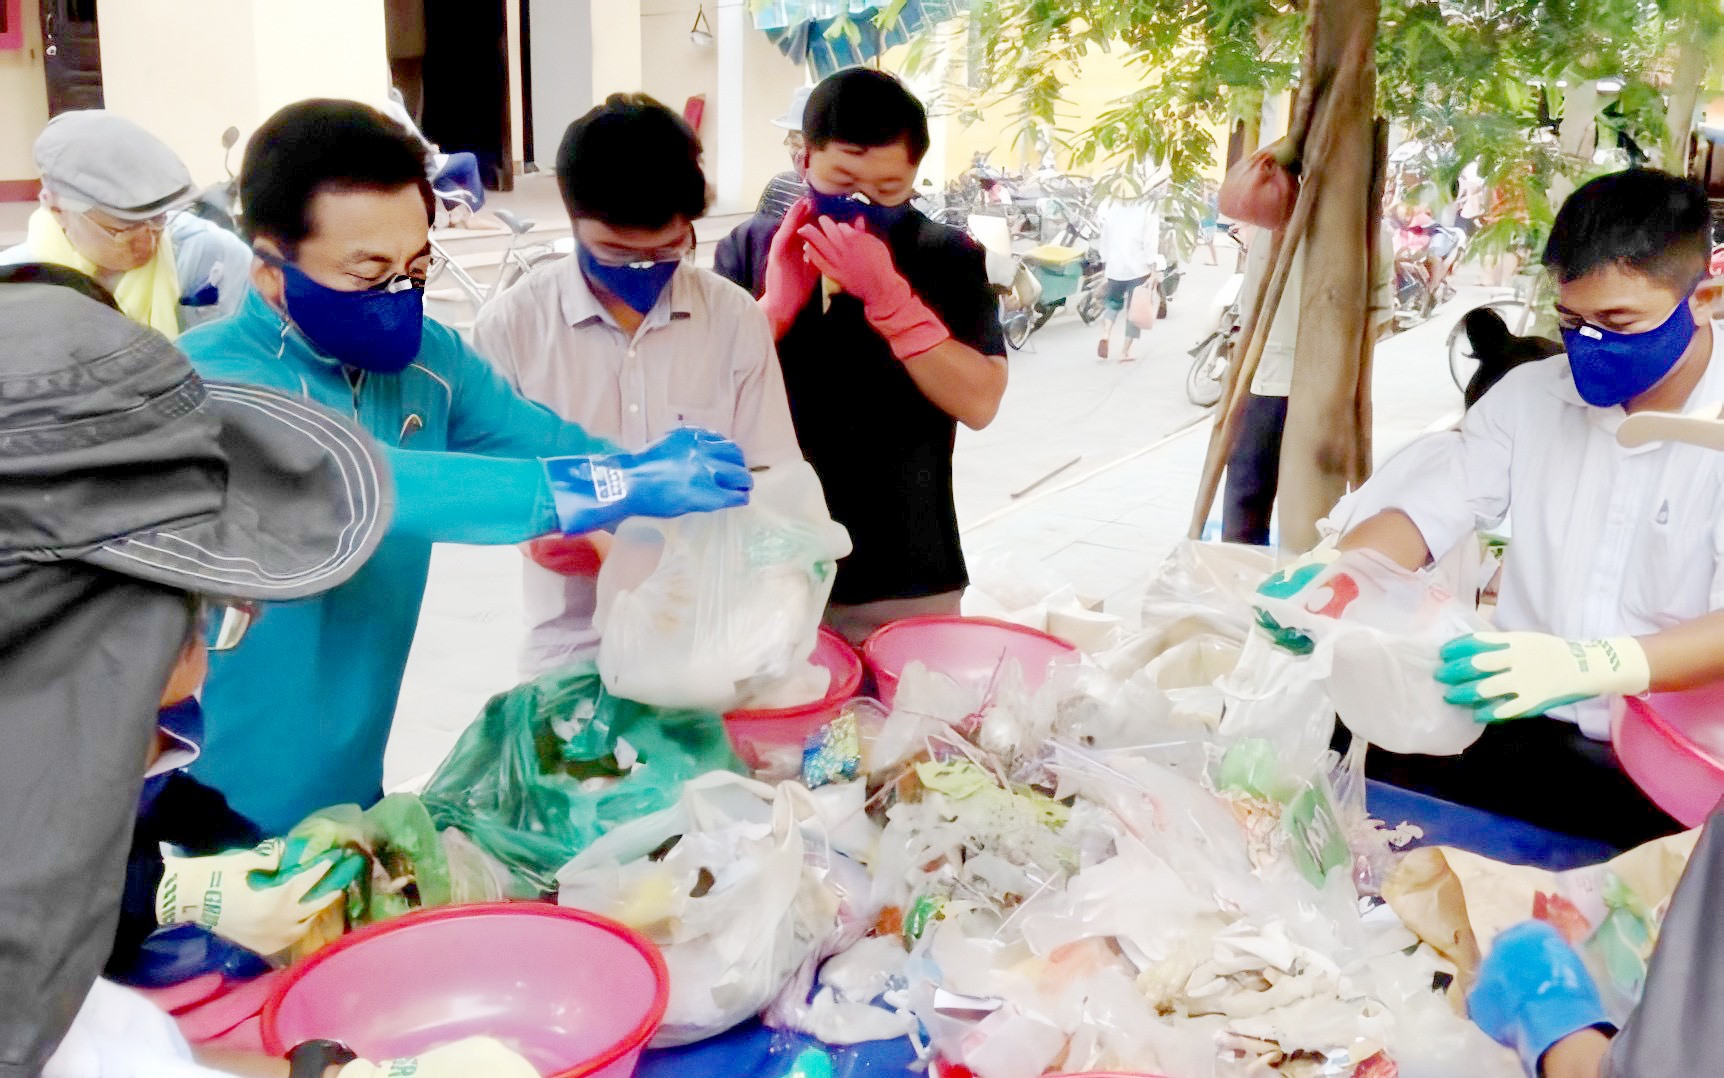 Hoạt động phân loại rác tại Chợ Hội An. Ảnh: VINH HẢI